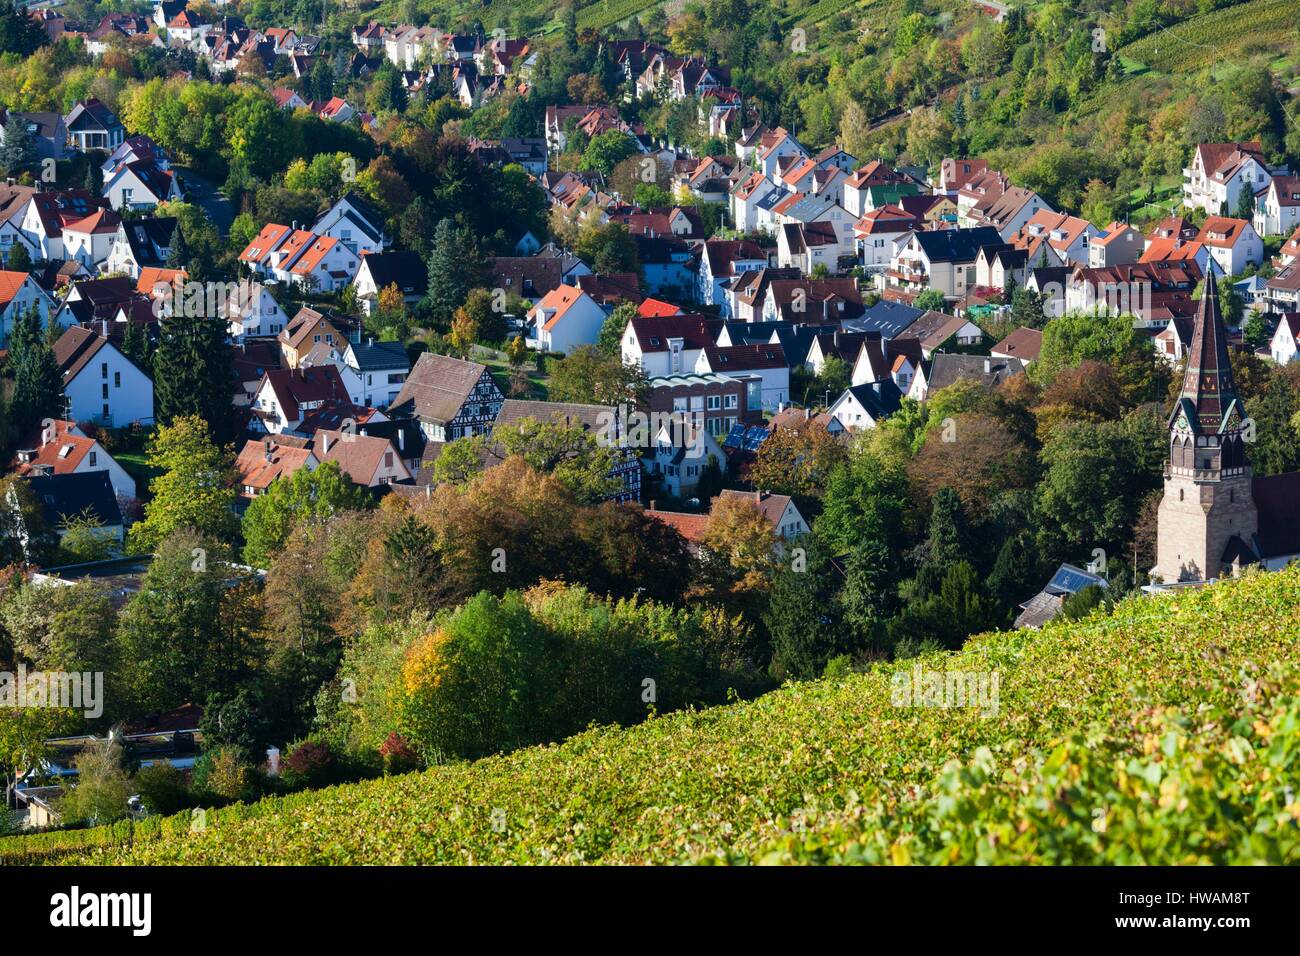 Germany, Baden-Wurttemburg, Stuttgart-Uhlbach, vineyards Stock Photo